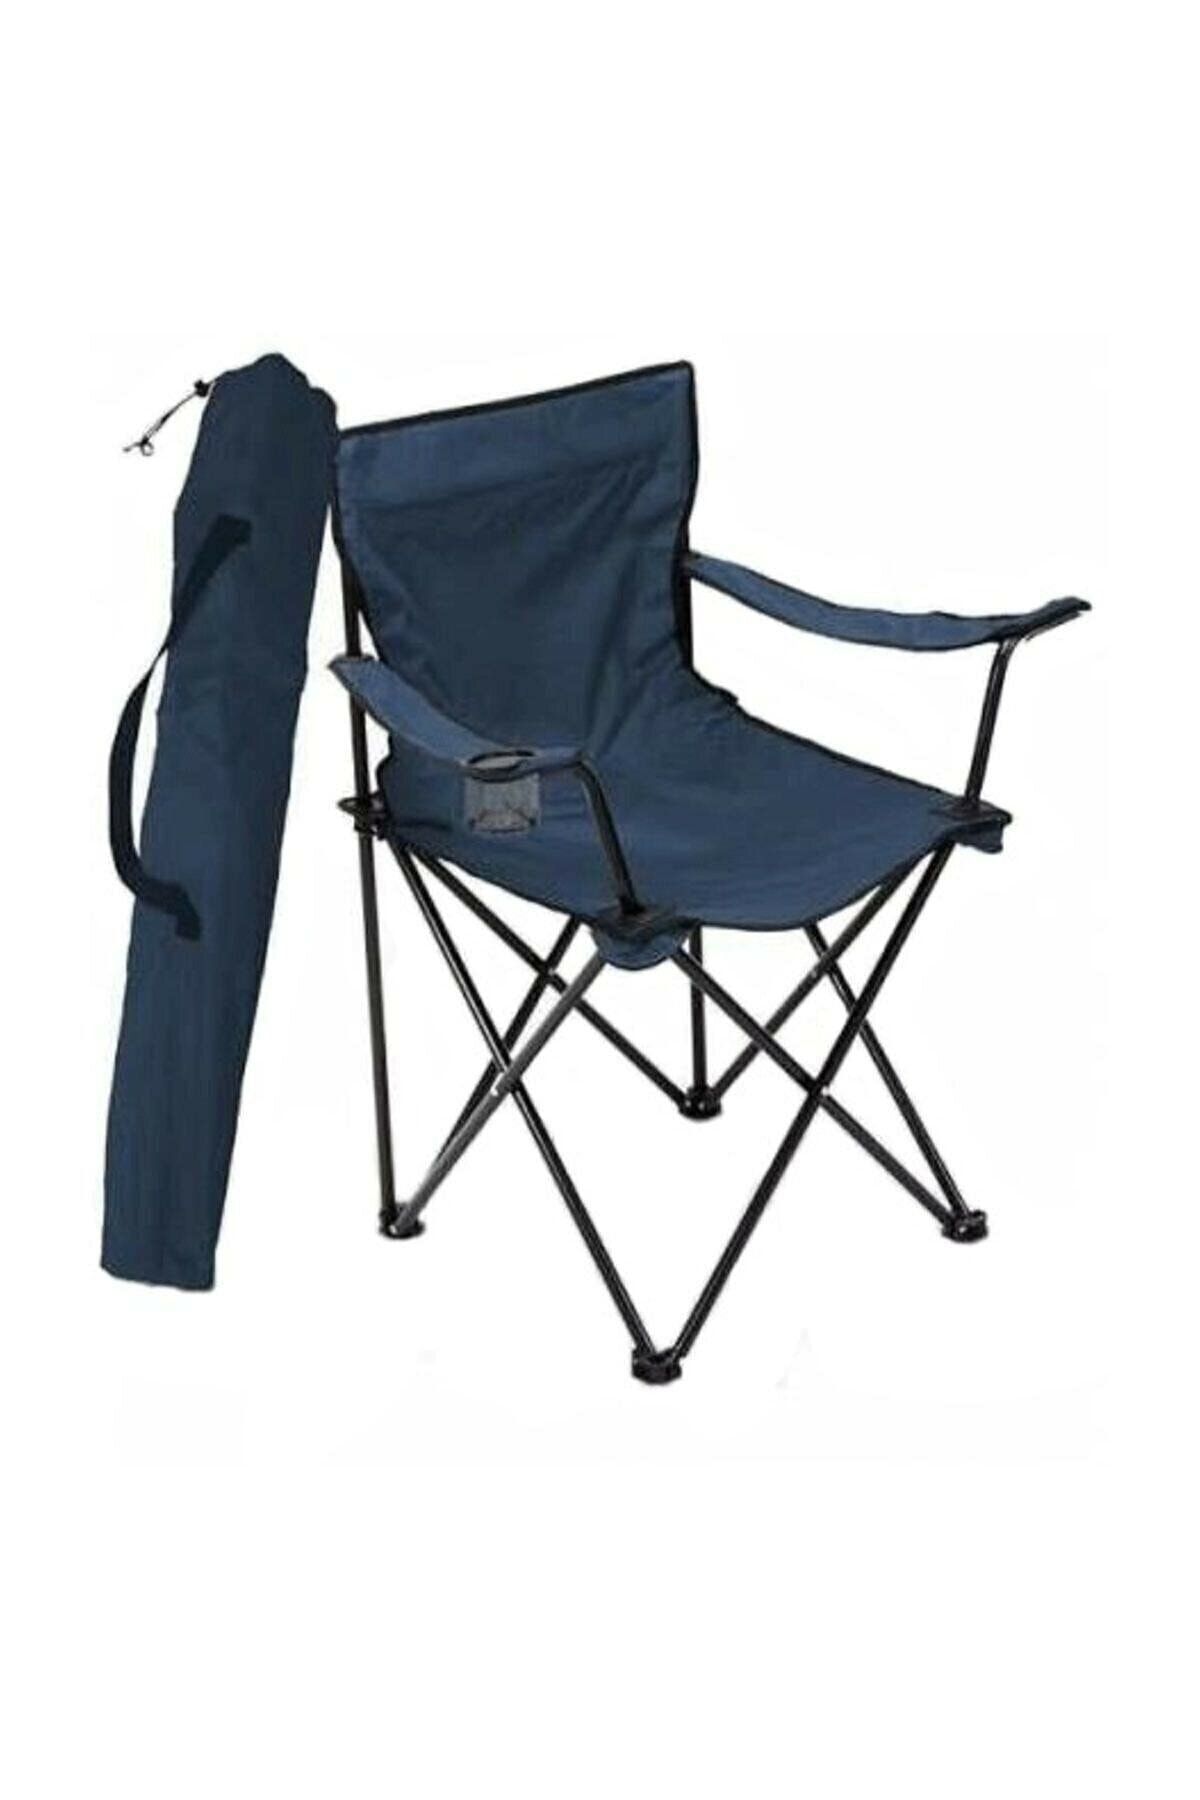 Mocca Style Kamp Sandalyesi Katlanır Sandalye Bahçe Koltuğu Piknik Plaj Balkon Sandalyesi 1 Adet